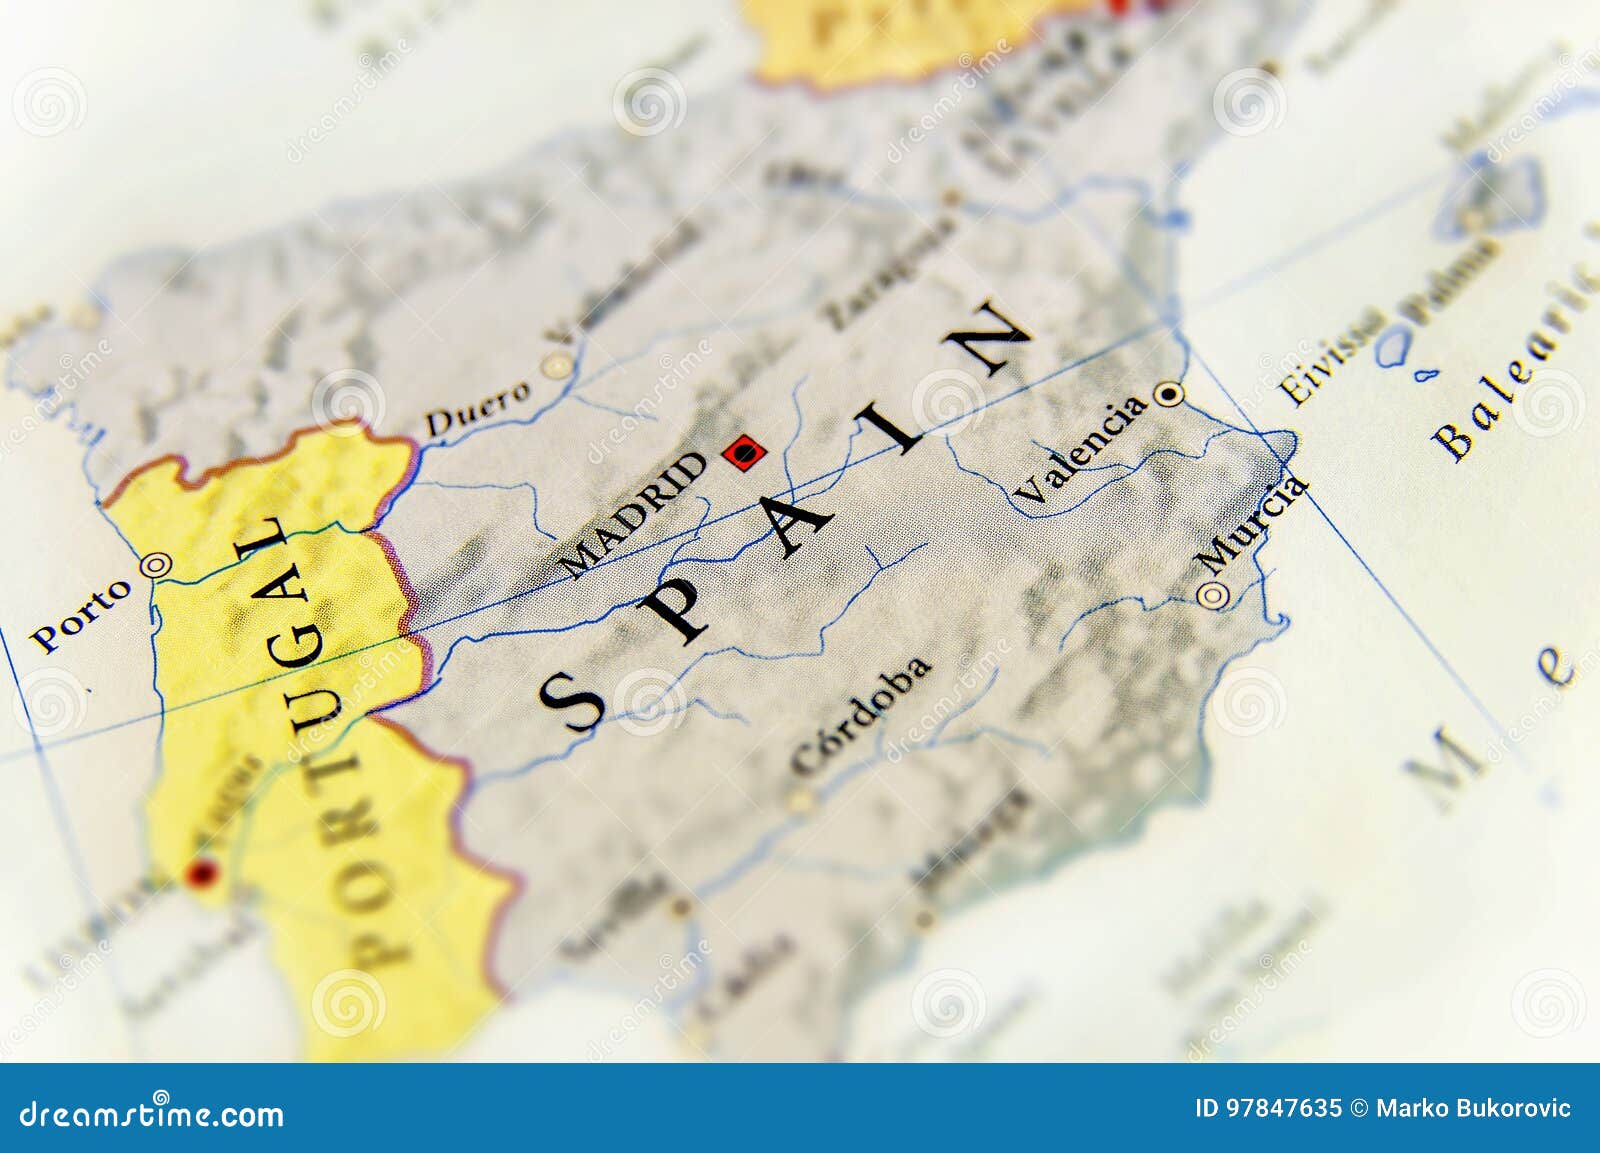 821 fotos de stock e banco de imagens de Mapa España Portugal - Getty Images